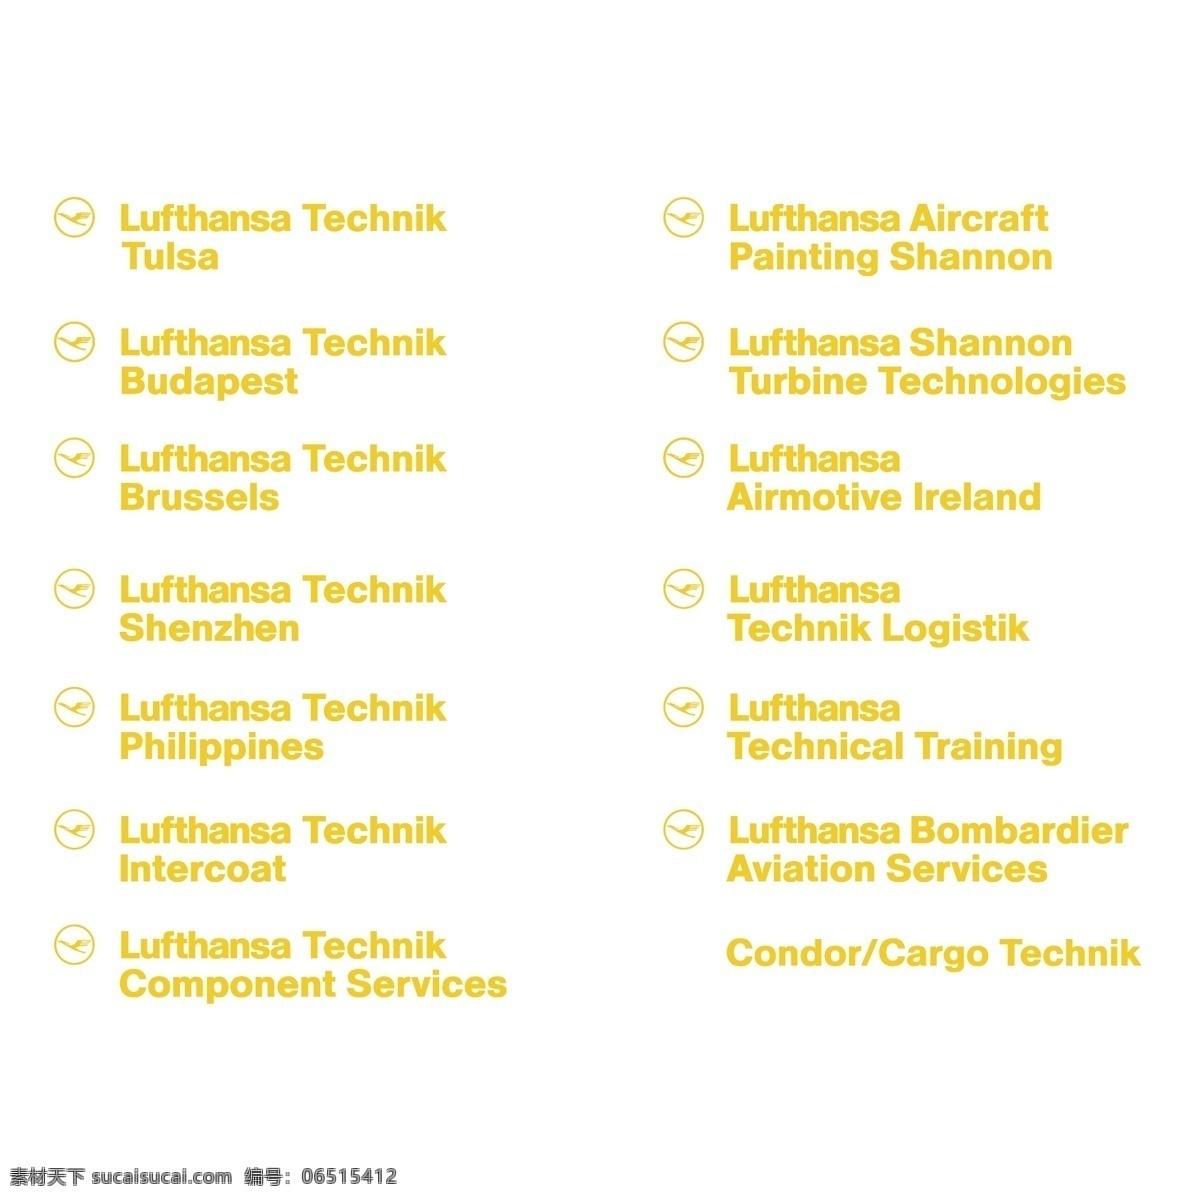 汉莎 技术 公司 标识 标志 矢量艺术 德国汉莎航空公司 汉莎技术公司 矢量 航空 汉莎航空公司 向量 航空公司 矢量图 建筑家居